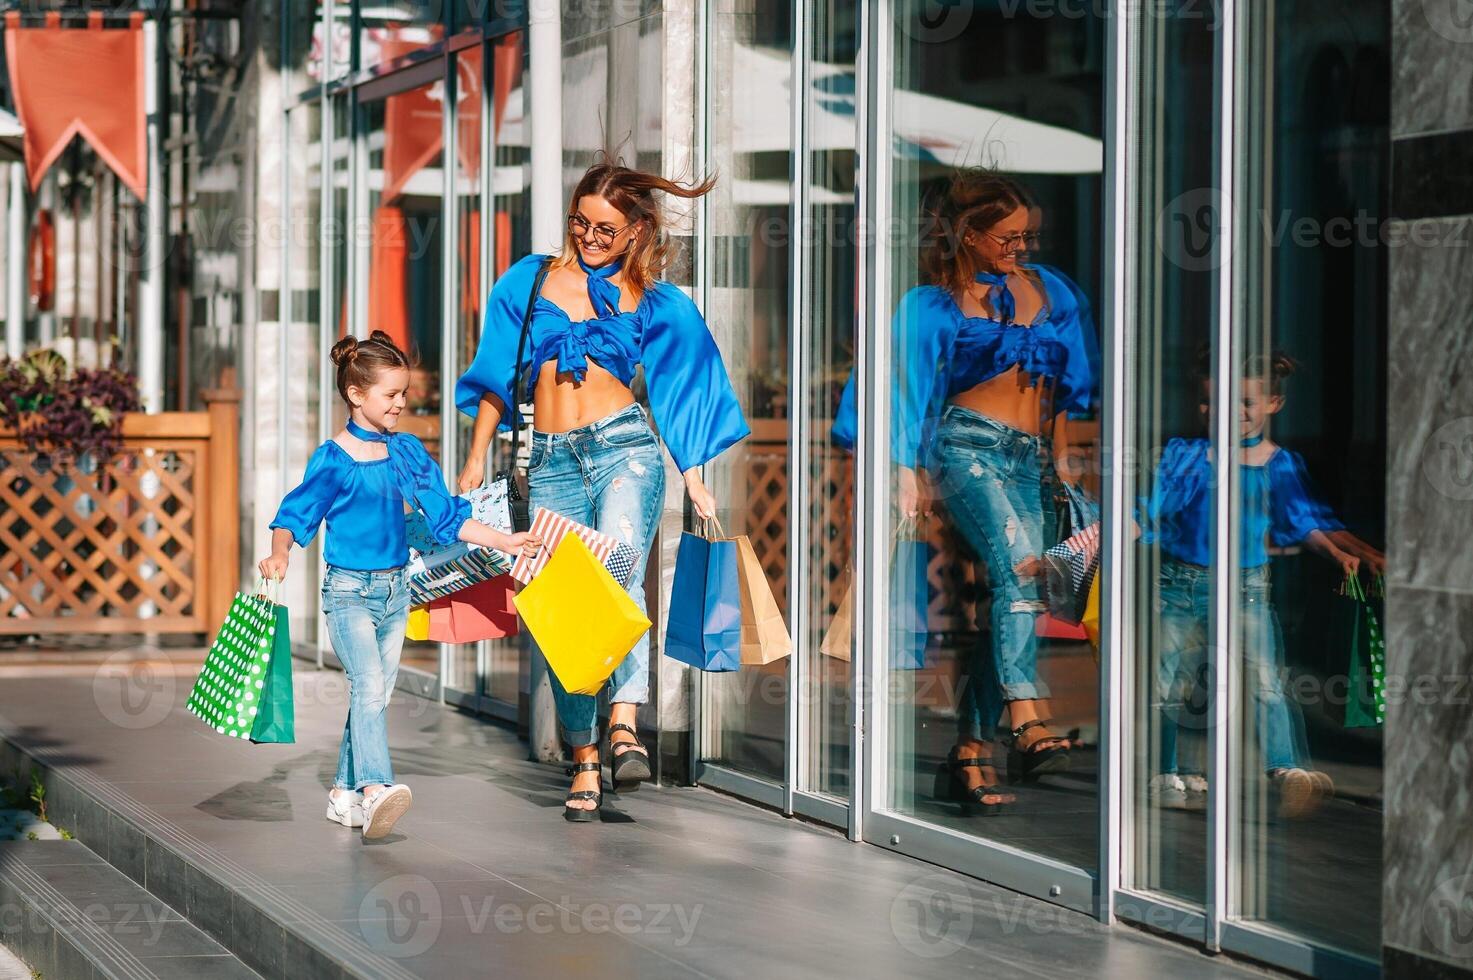 oferta, consumismo e pessoas conceito - feliz jovem mulheres dela Dauther com compras bolsas caminhando cidade rua foto